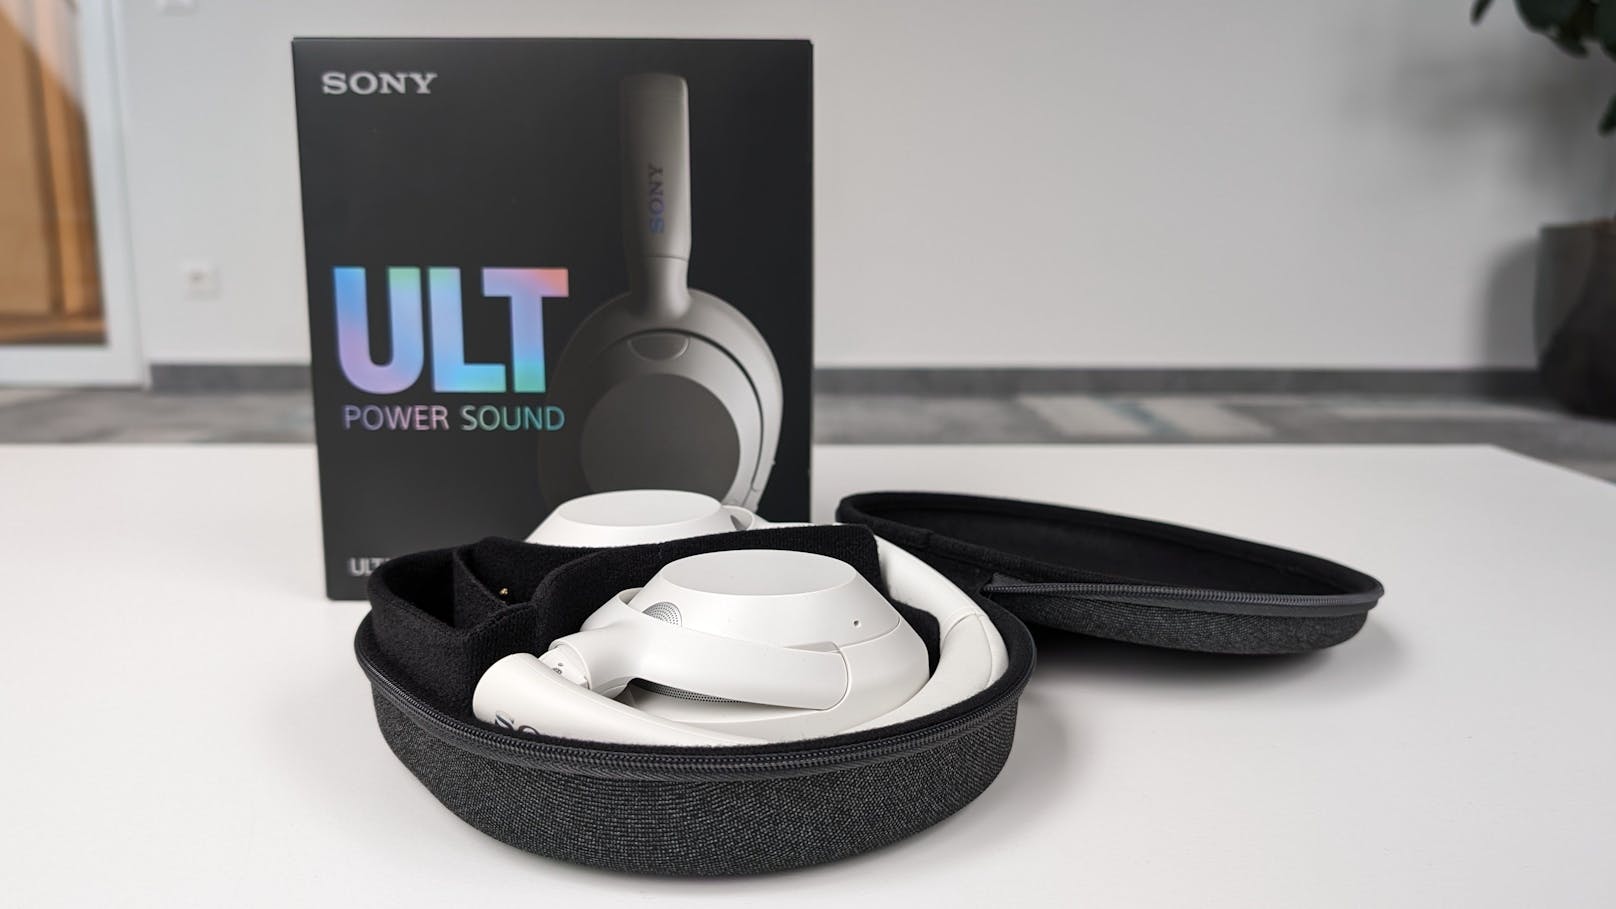 Sony ULT Wear im Test – der "Deep Bass"-Modus macht Spaß, klingt sauber und wird der Liebling aller Nutzer sein.